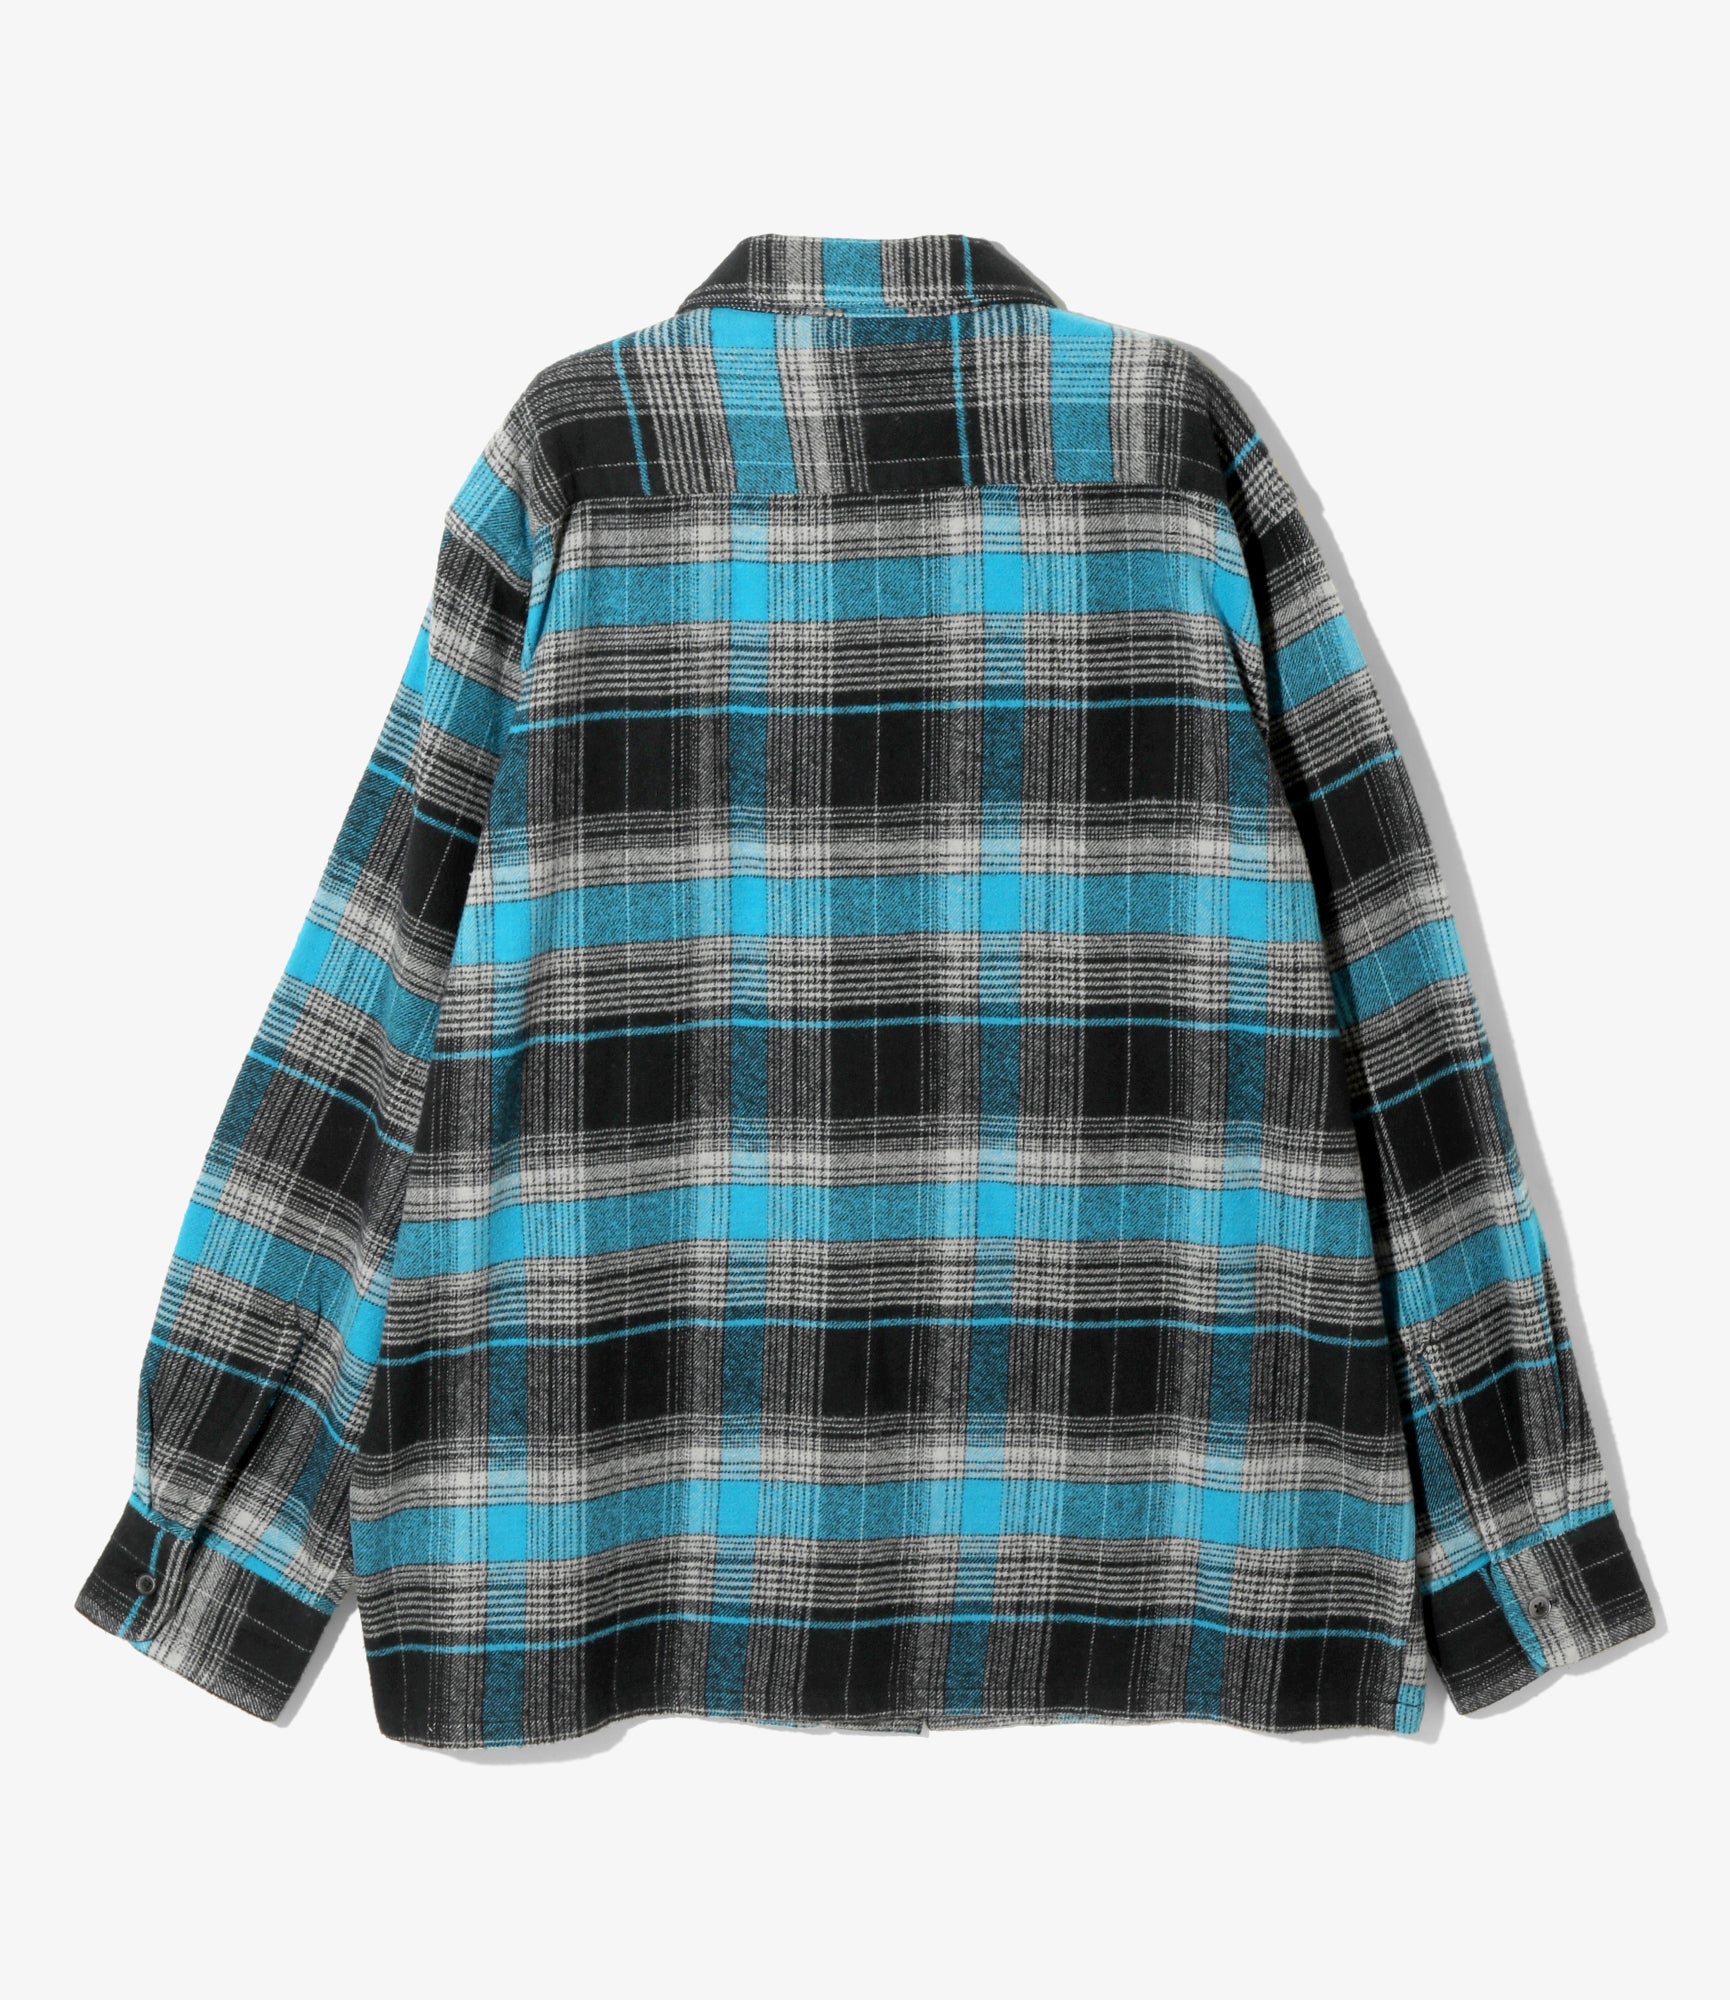 South2 West8 6 Pocket Shirt - Flannel Twill / Plaid - Lt. Blue/Grey